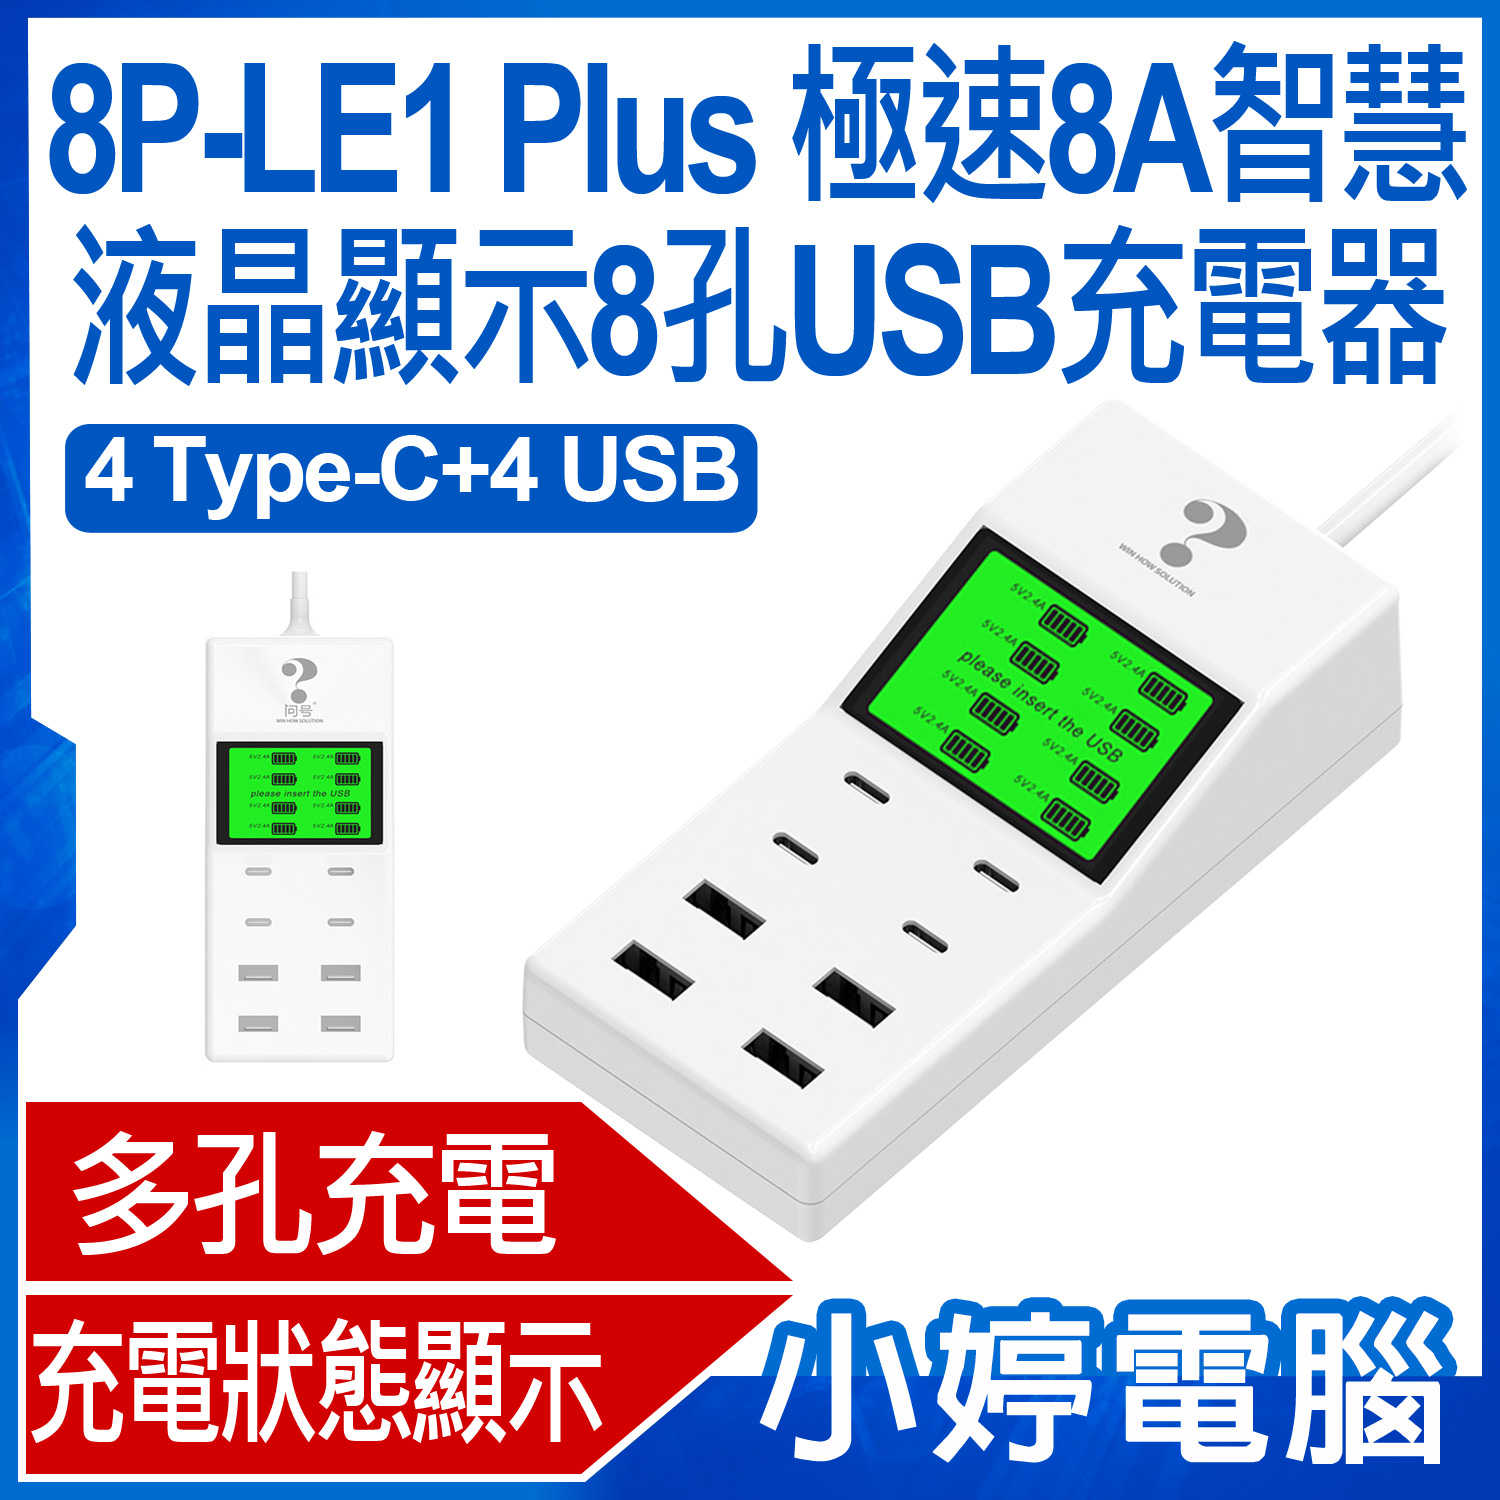 【小婷電腦＊充電器】全新 8P-LE1 Plus 極速8A智慧液晶顯示8孔USB充電器 4Type-C+4USB 2.4